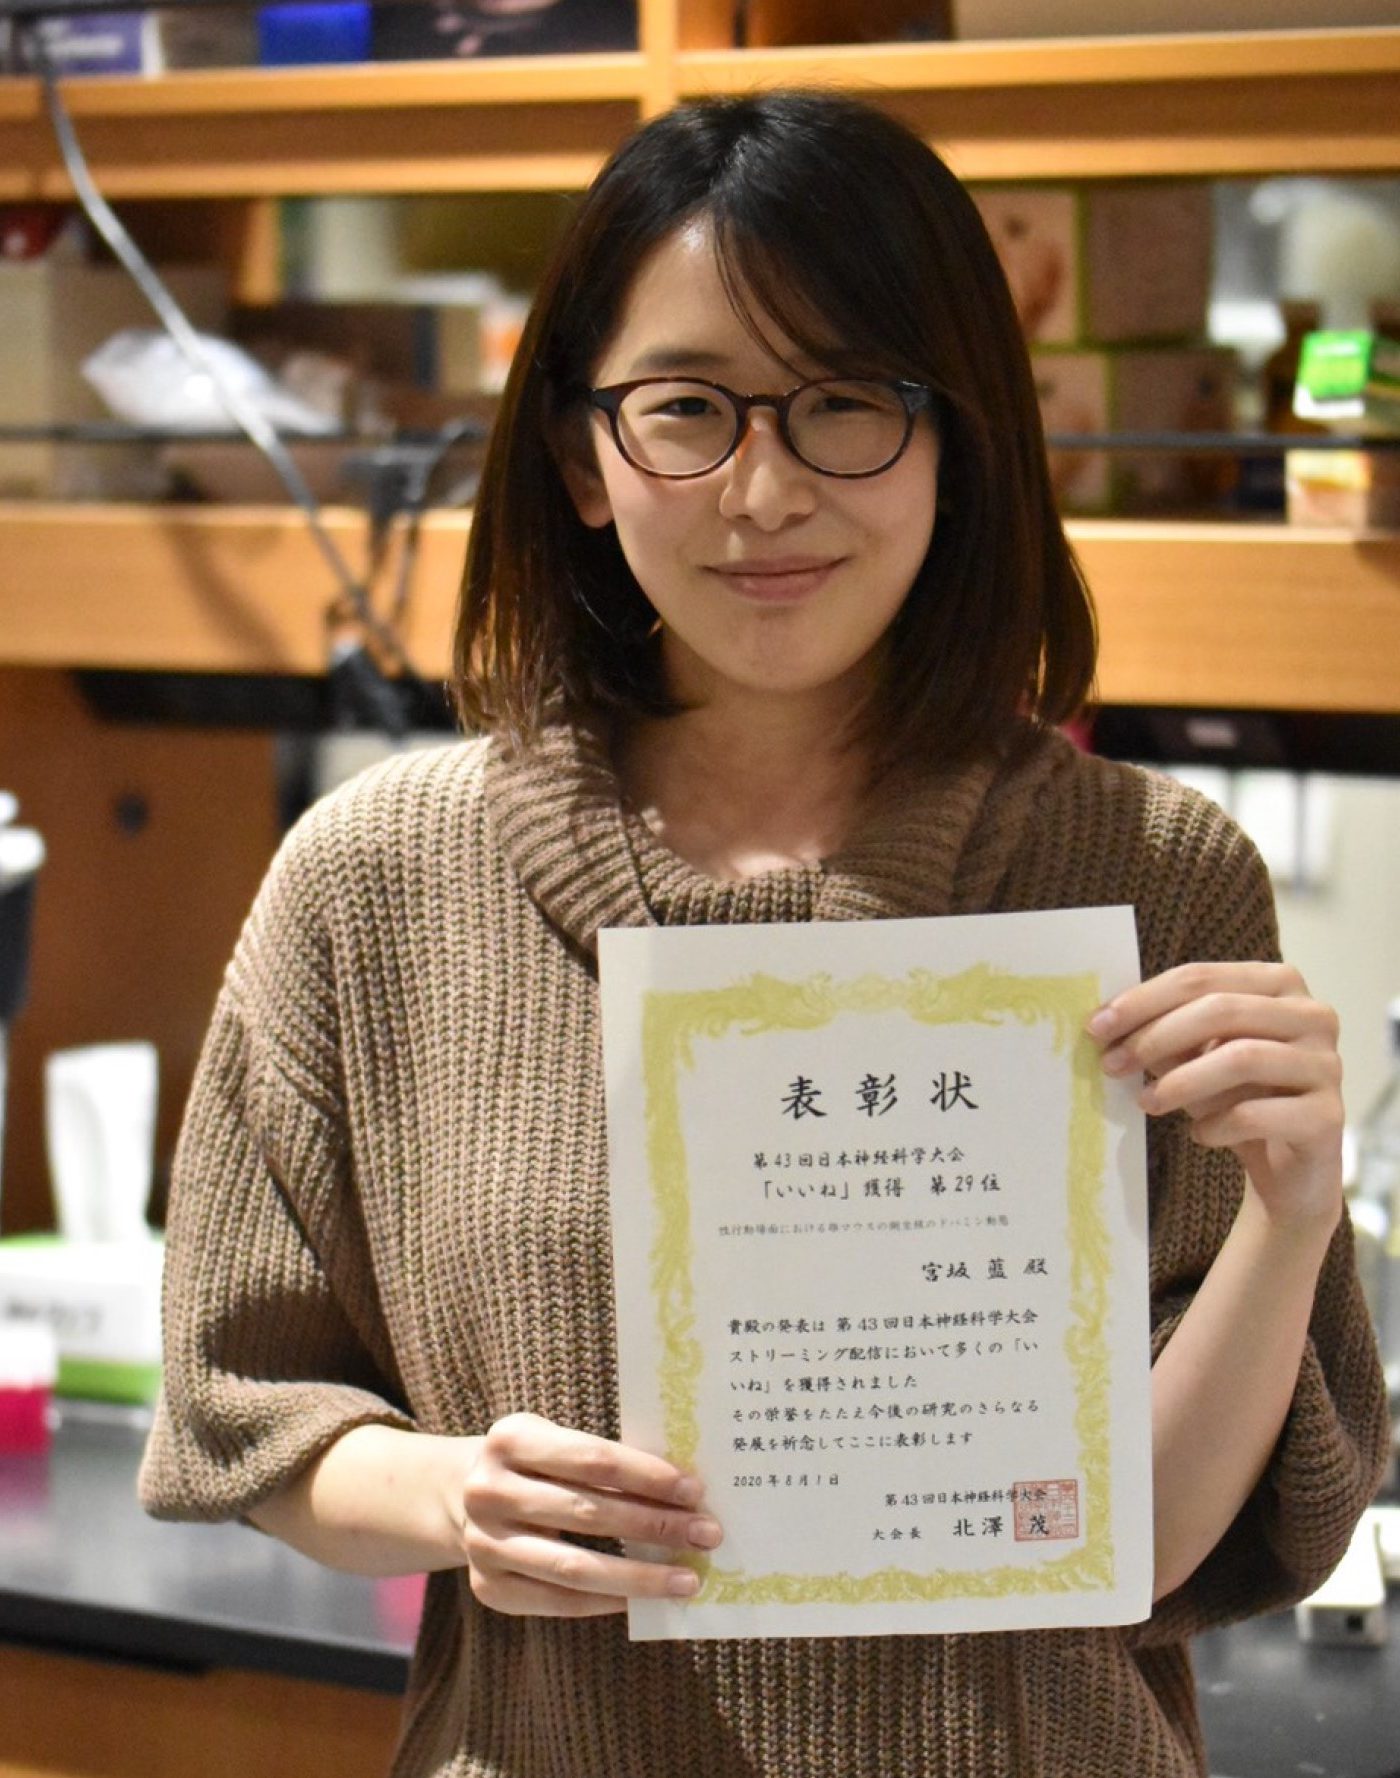 宮坂藍さん(ヒューマニクス２年生)が2020年度 第43回日本神経科学大会にて筆頭著者としてポスター発表を行い、「いいね」獲得数上位で表彰されました。